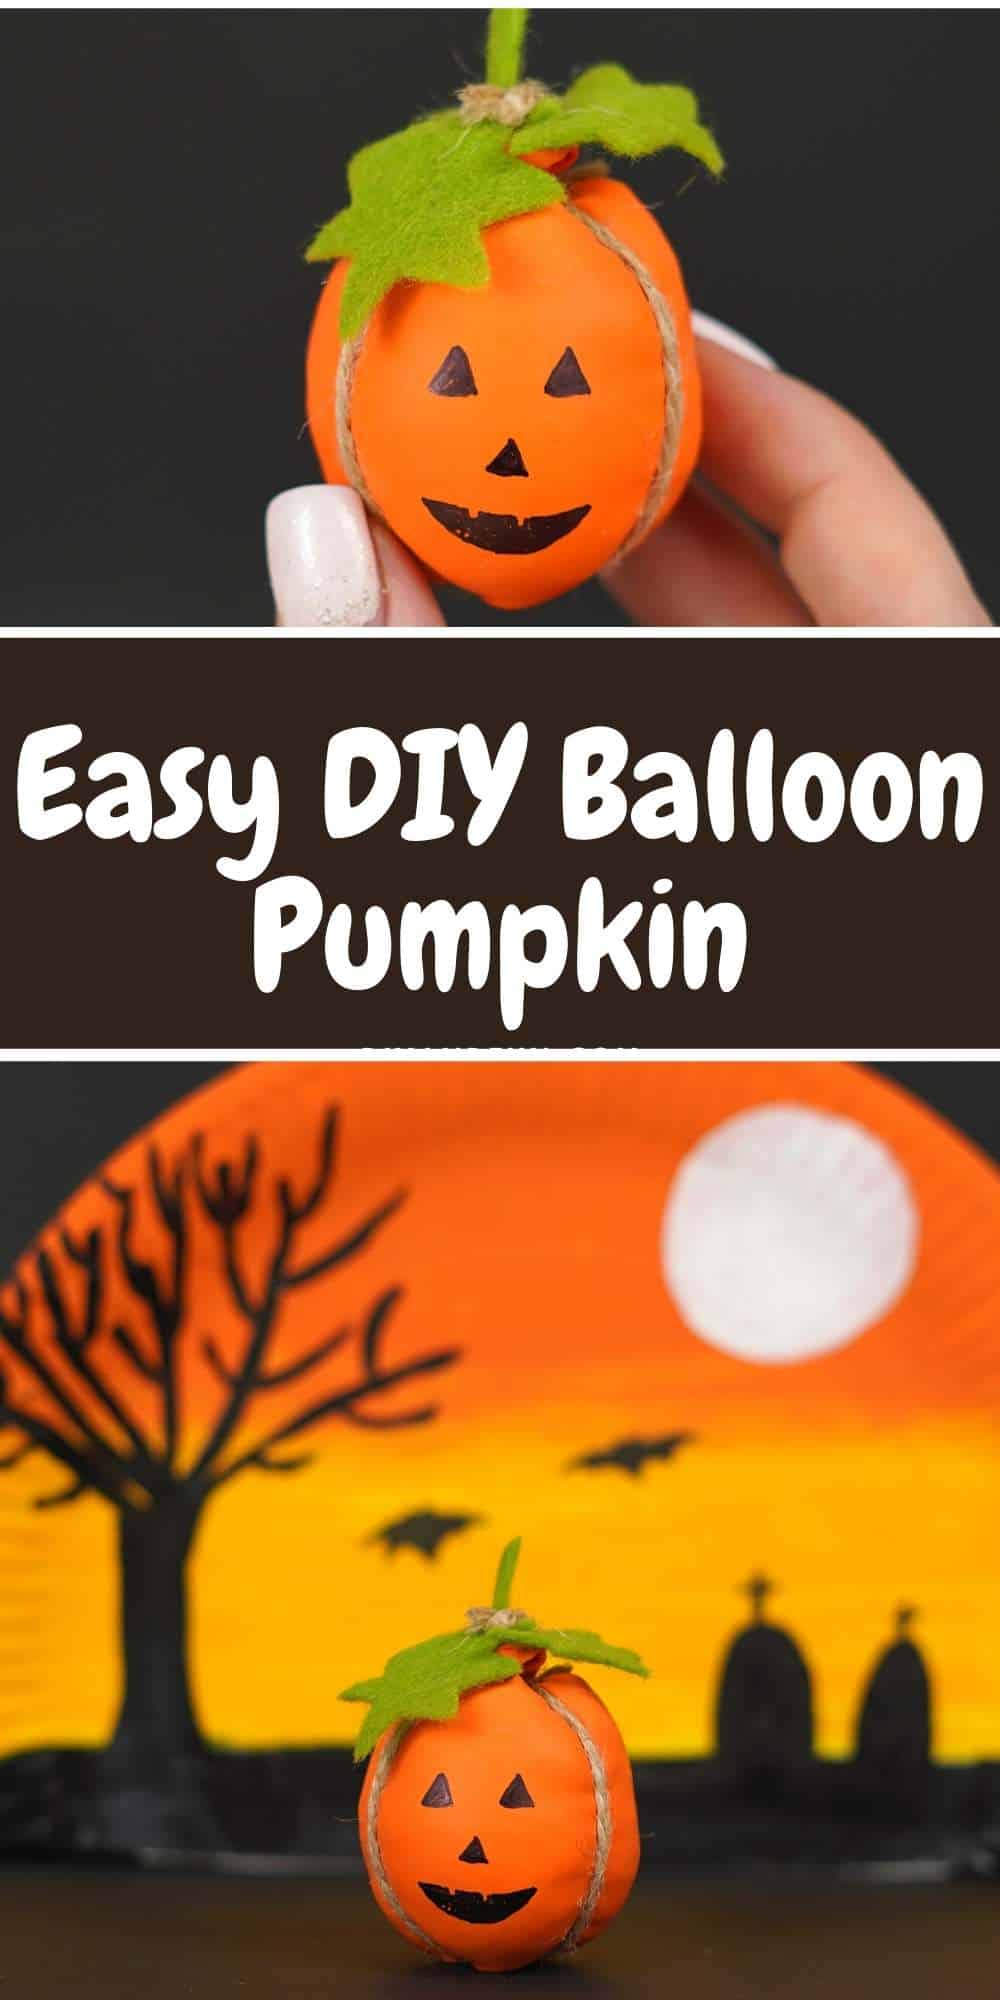 How to make a Balloon Pumpkin